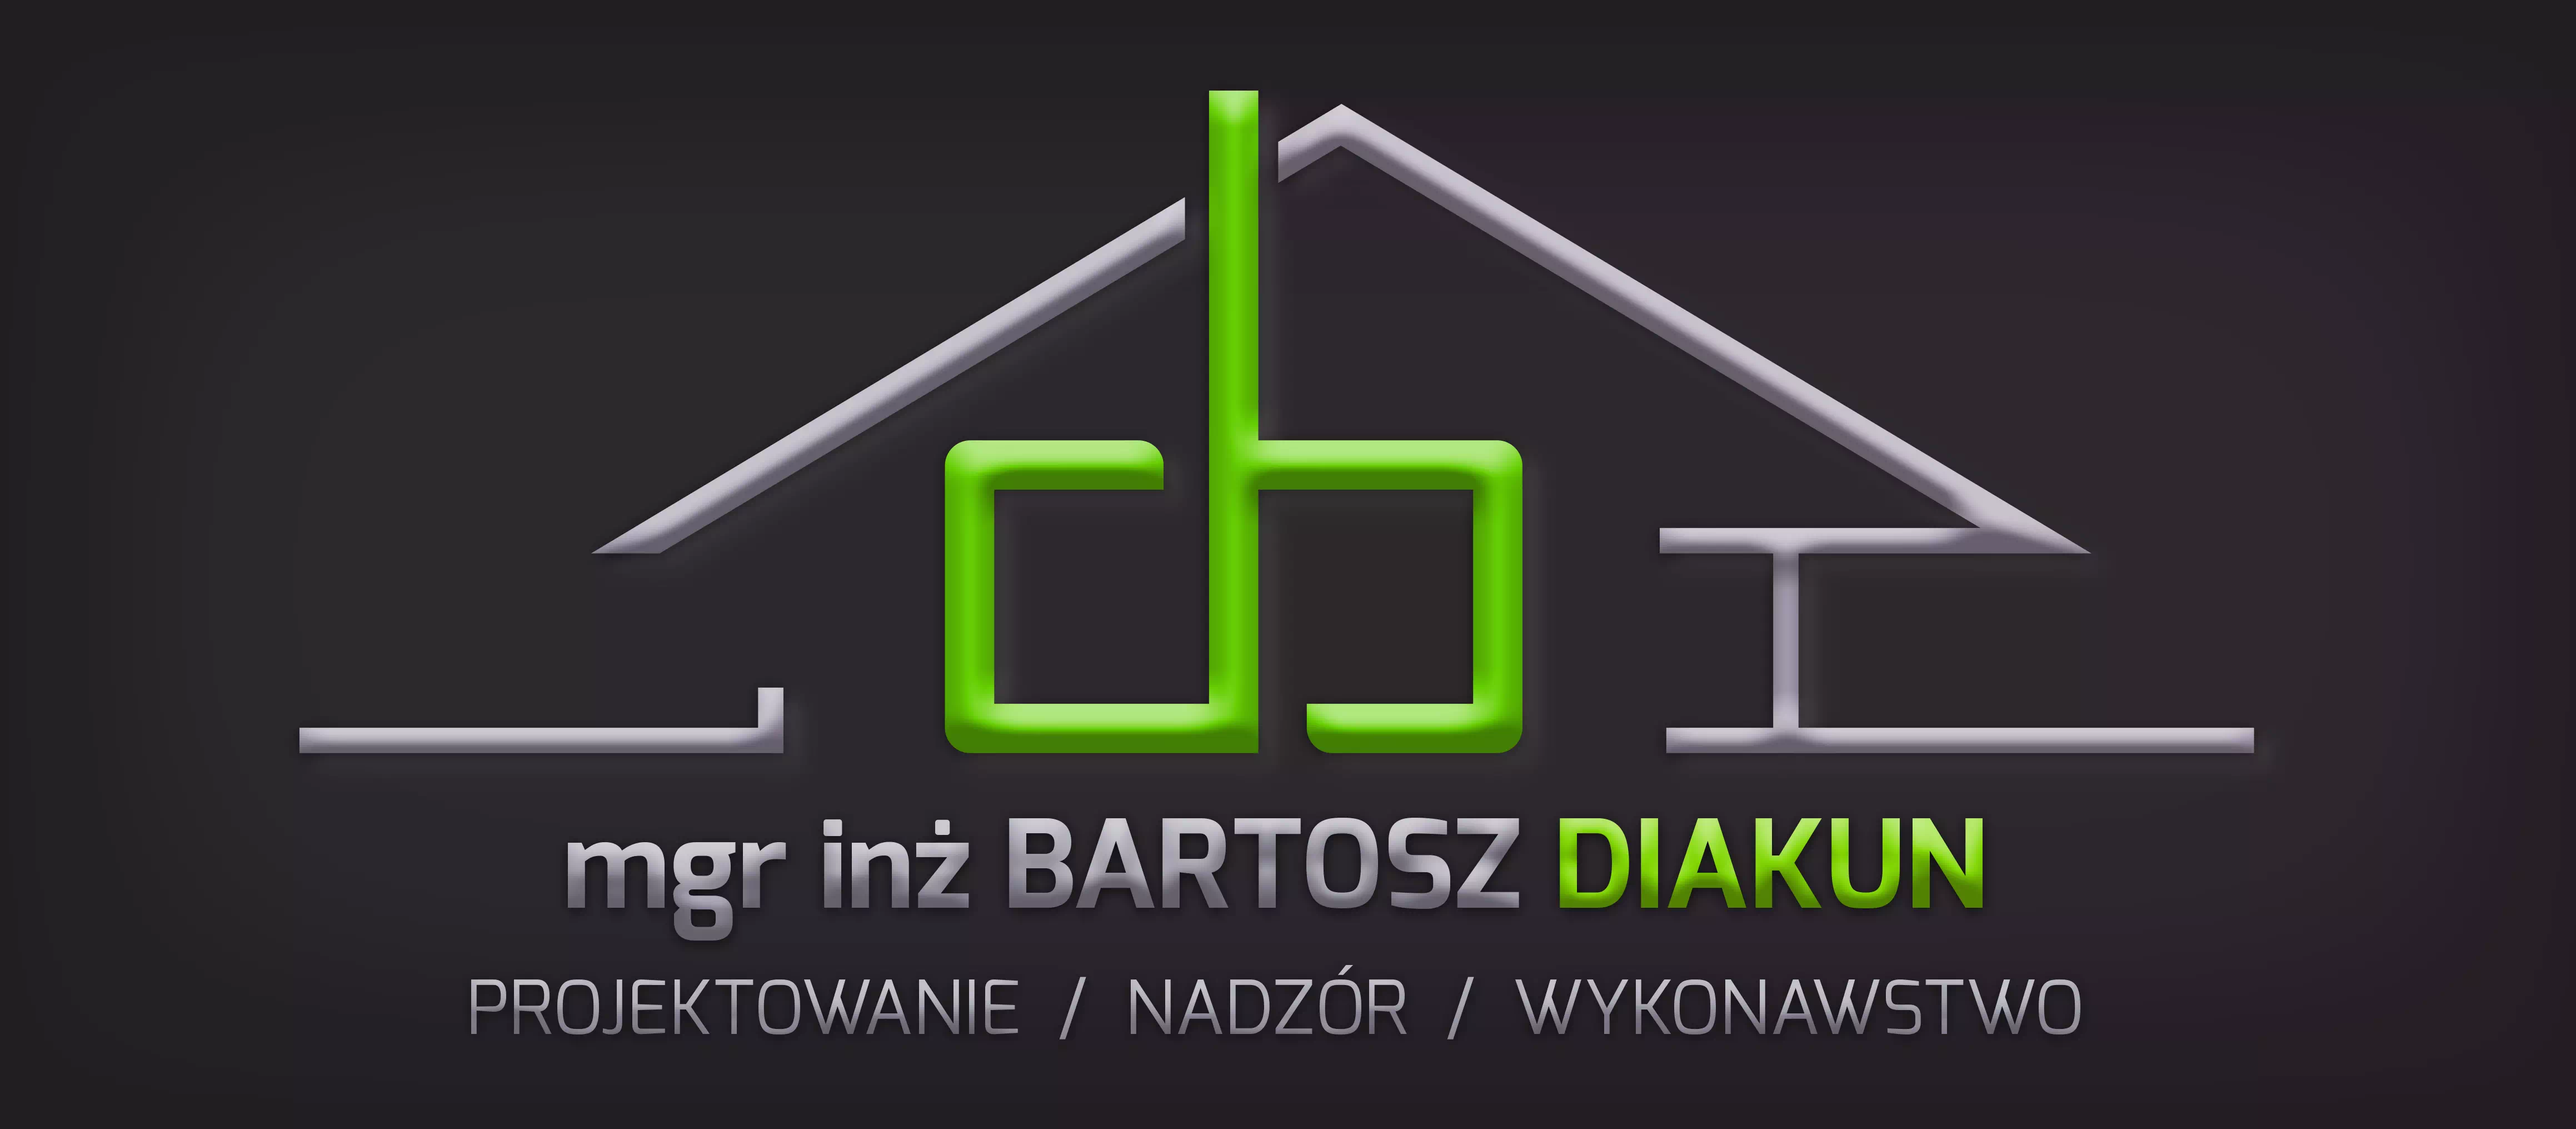 Bartosz Diakun DB Projektowanie Nadzór Wykonawstwo logo